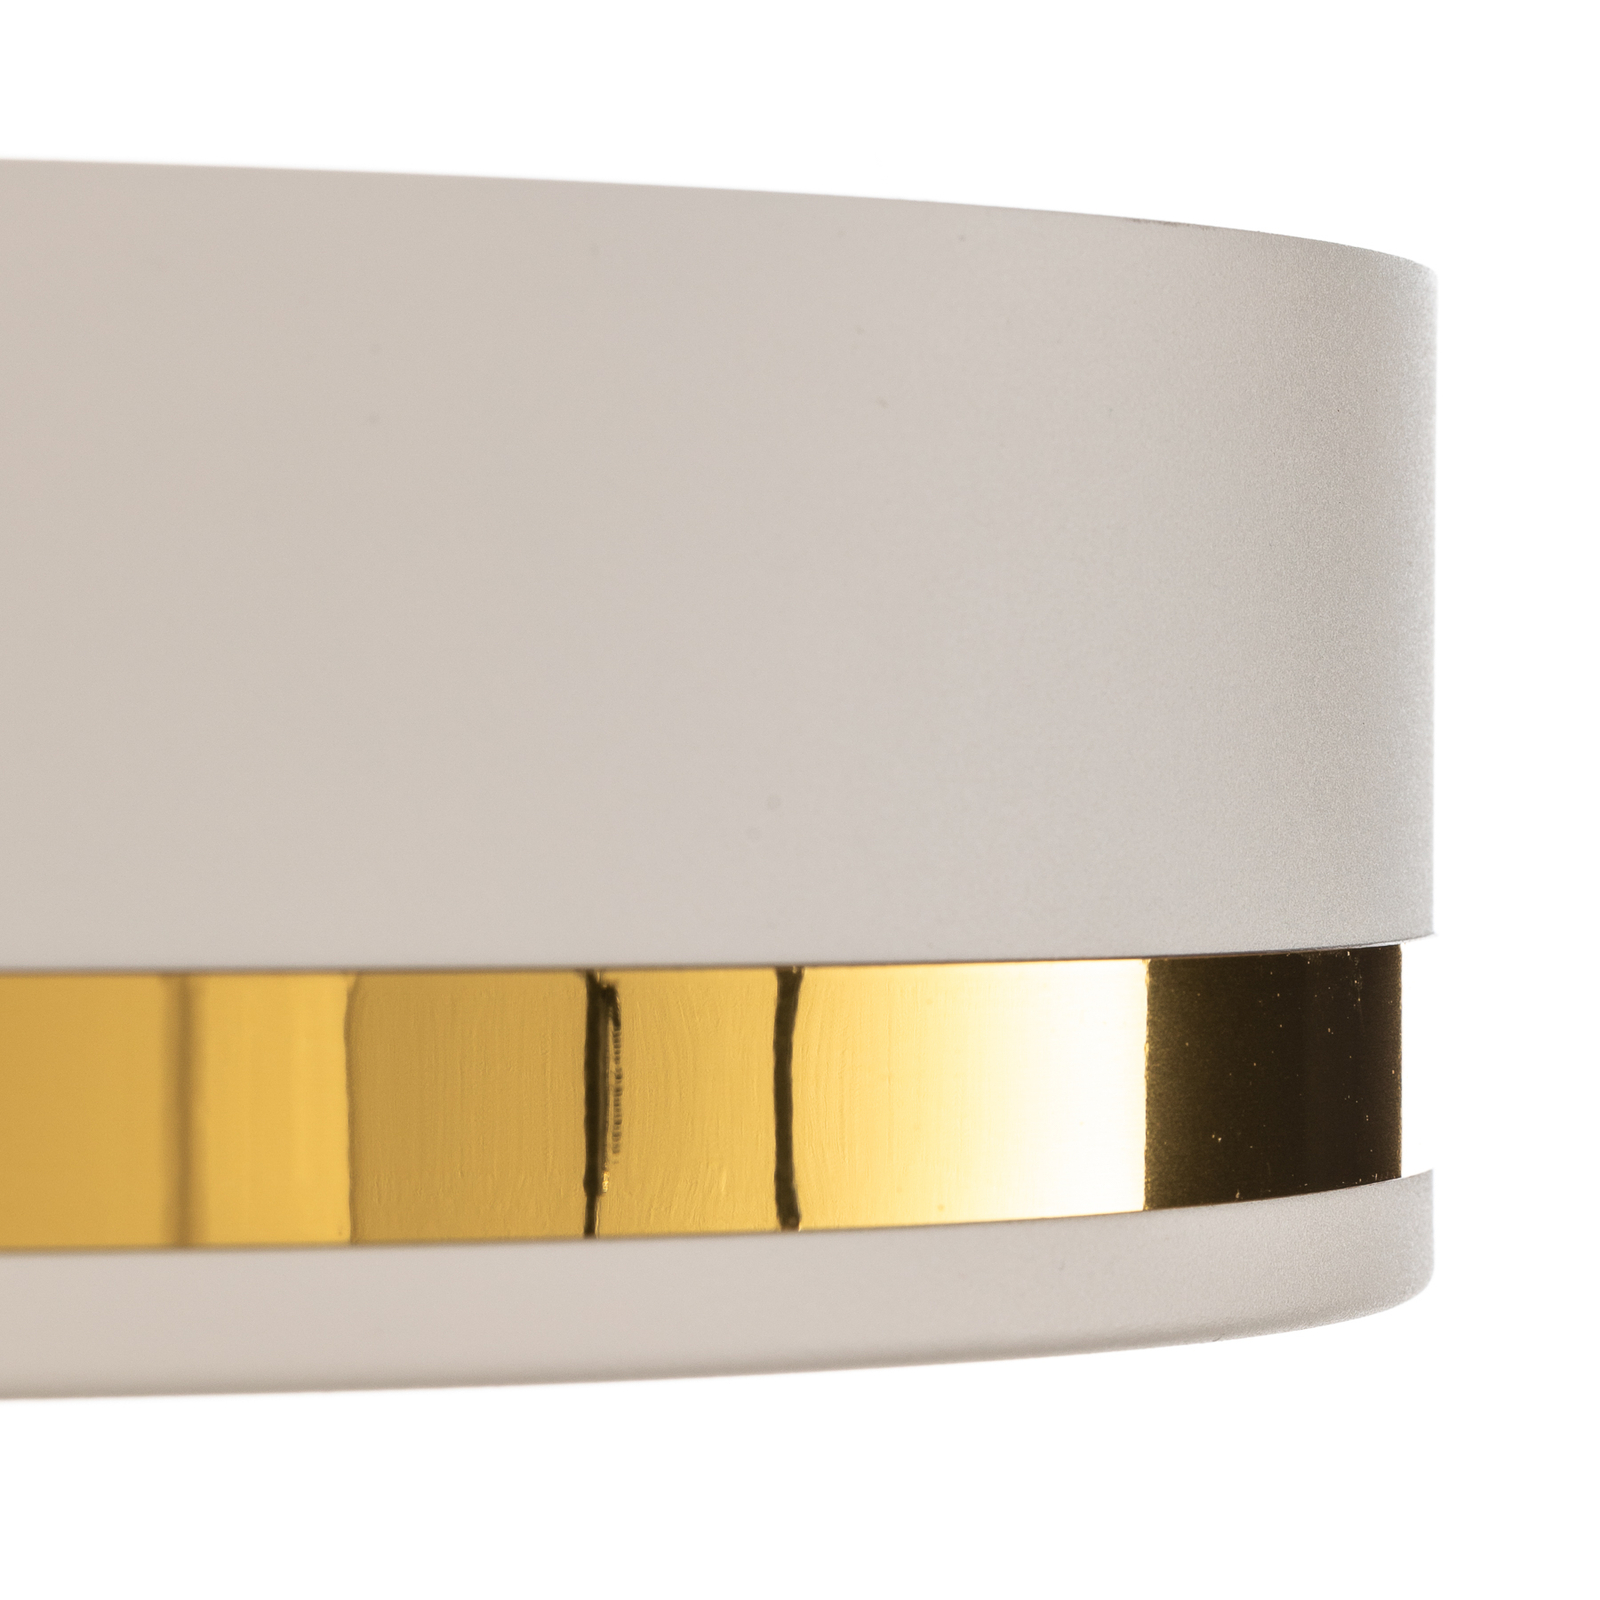 Amore ceiling light, gold stripes, white, Ø 35cm